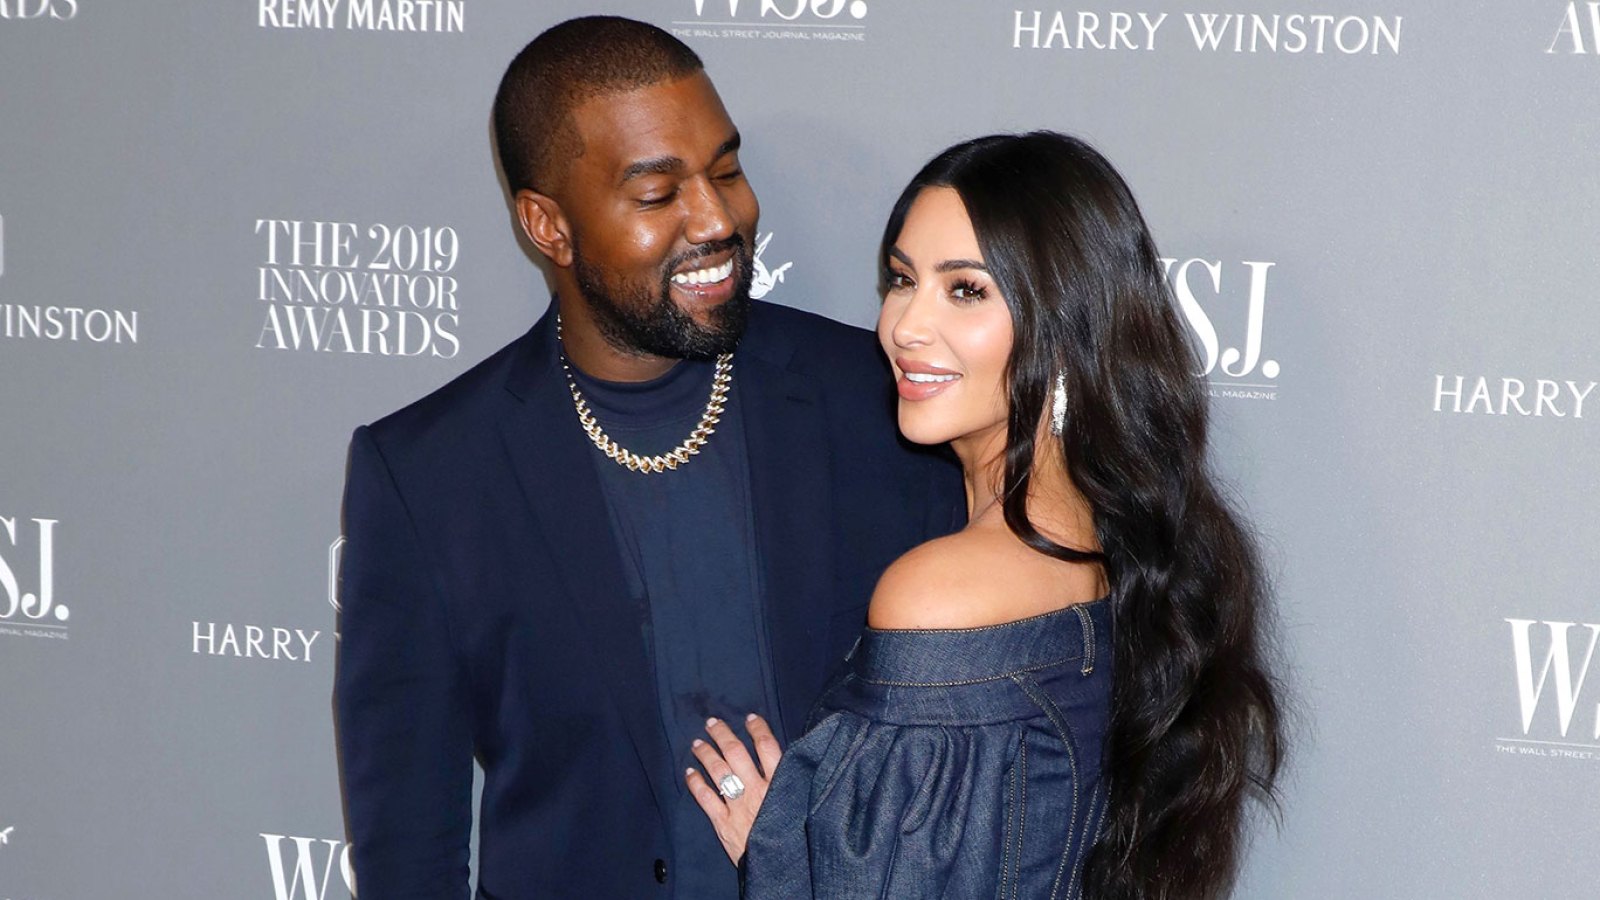 Kim Kardashian shares touching message dedicated to Virgil Abloh